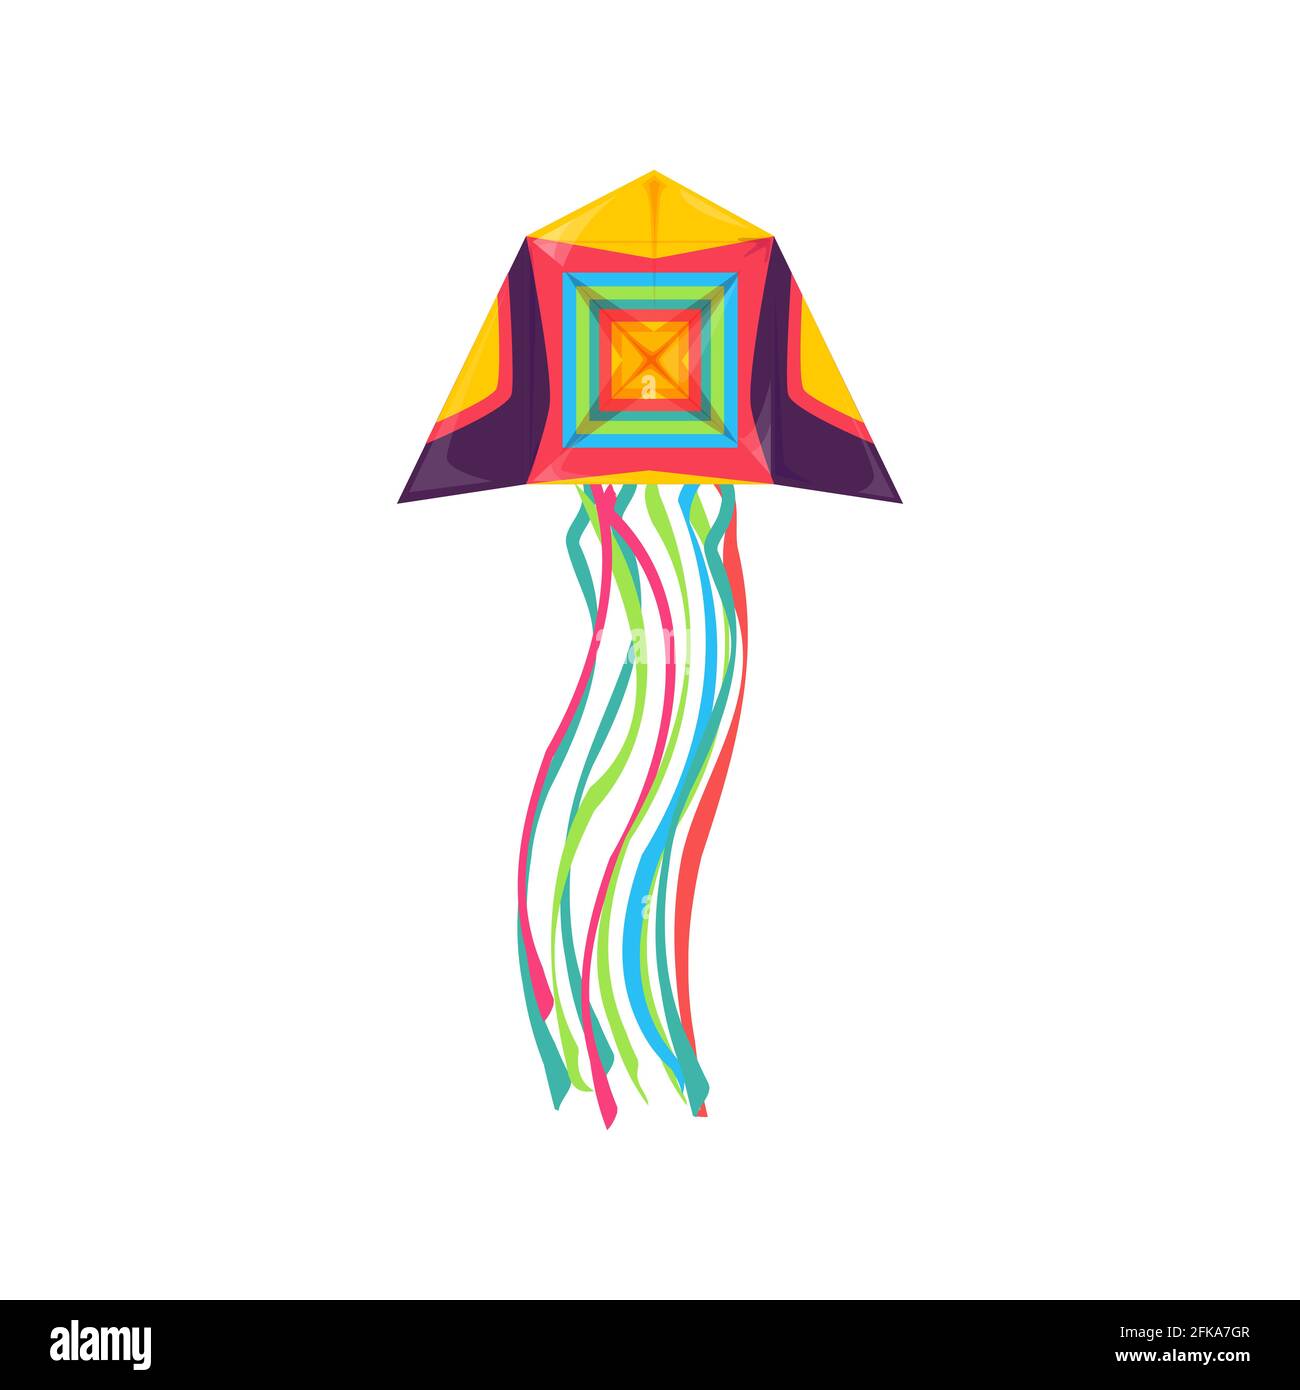 Cerf-volant en forme de méduse volant dans le ciel isolé jouet pour enfants. Ballon-cerf-volant vectoriel flotté dans le vent, longues cordes aux extrémités, activités d'été en plein air obj Illustration de Vecteur